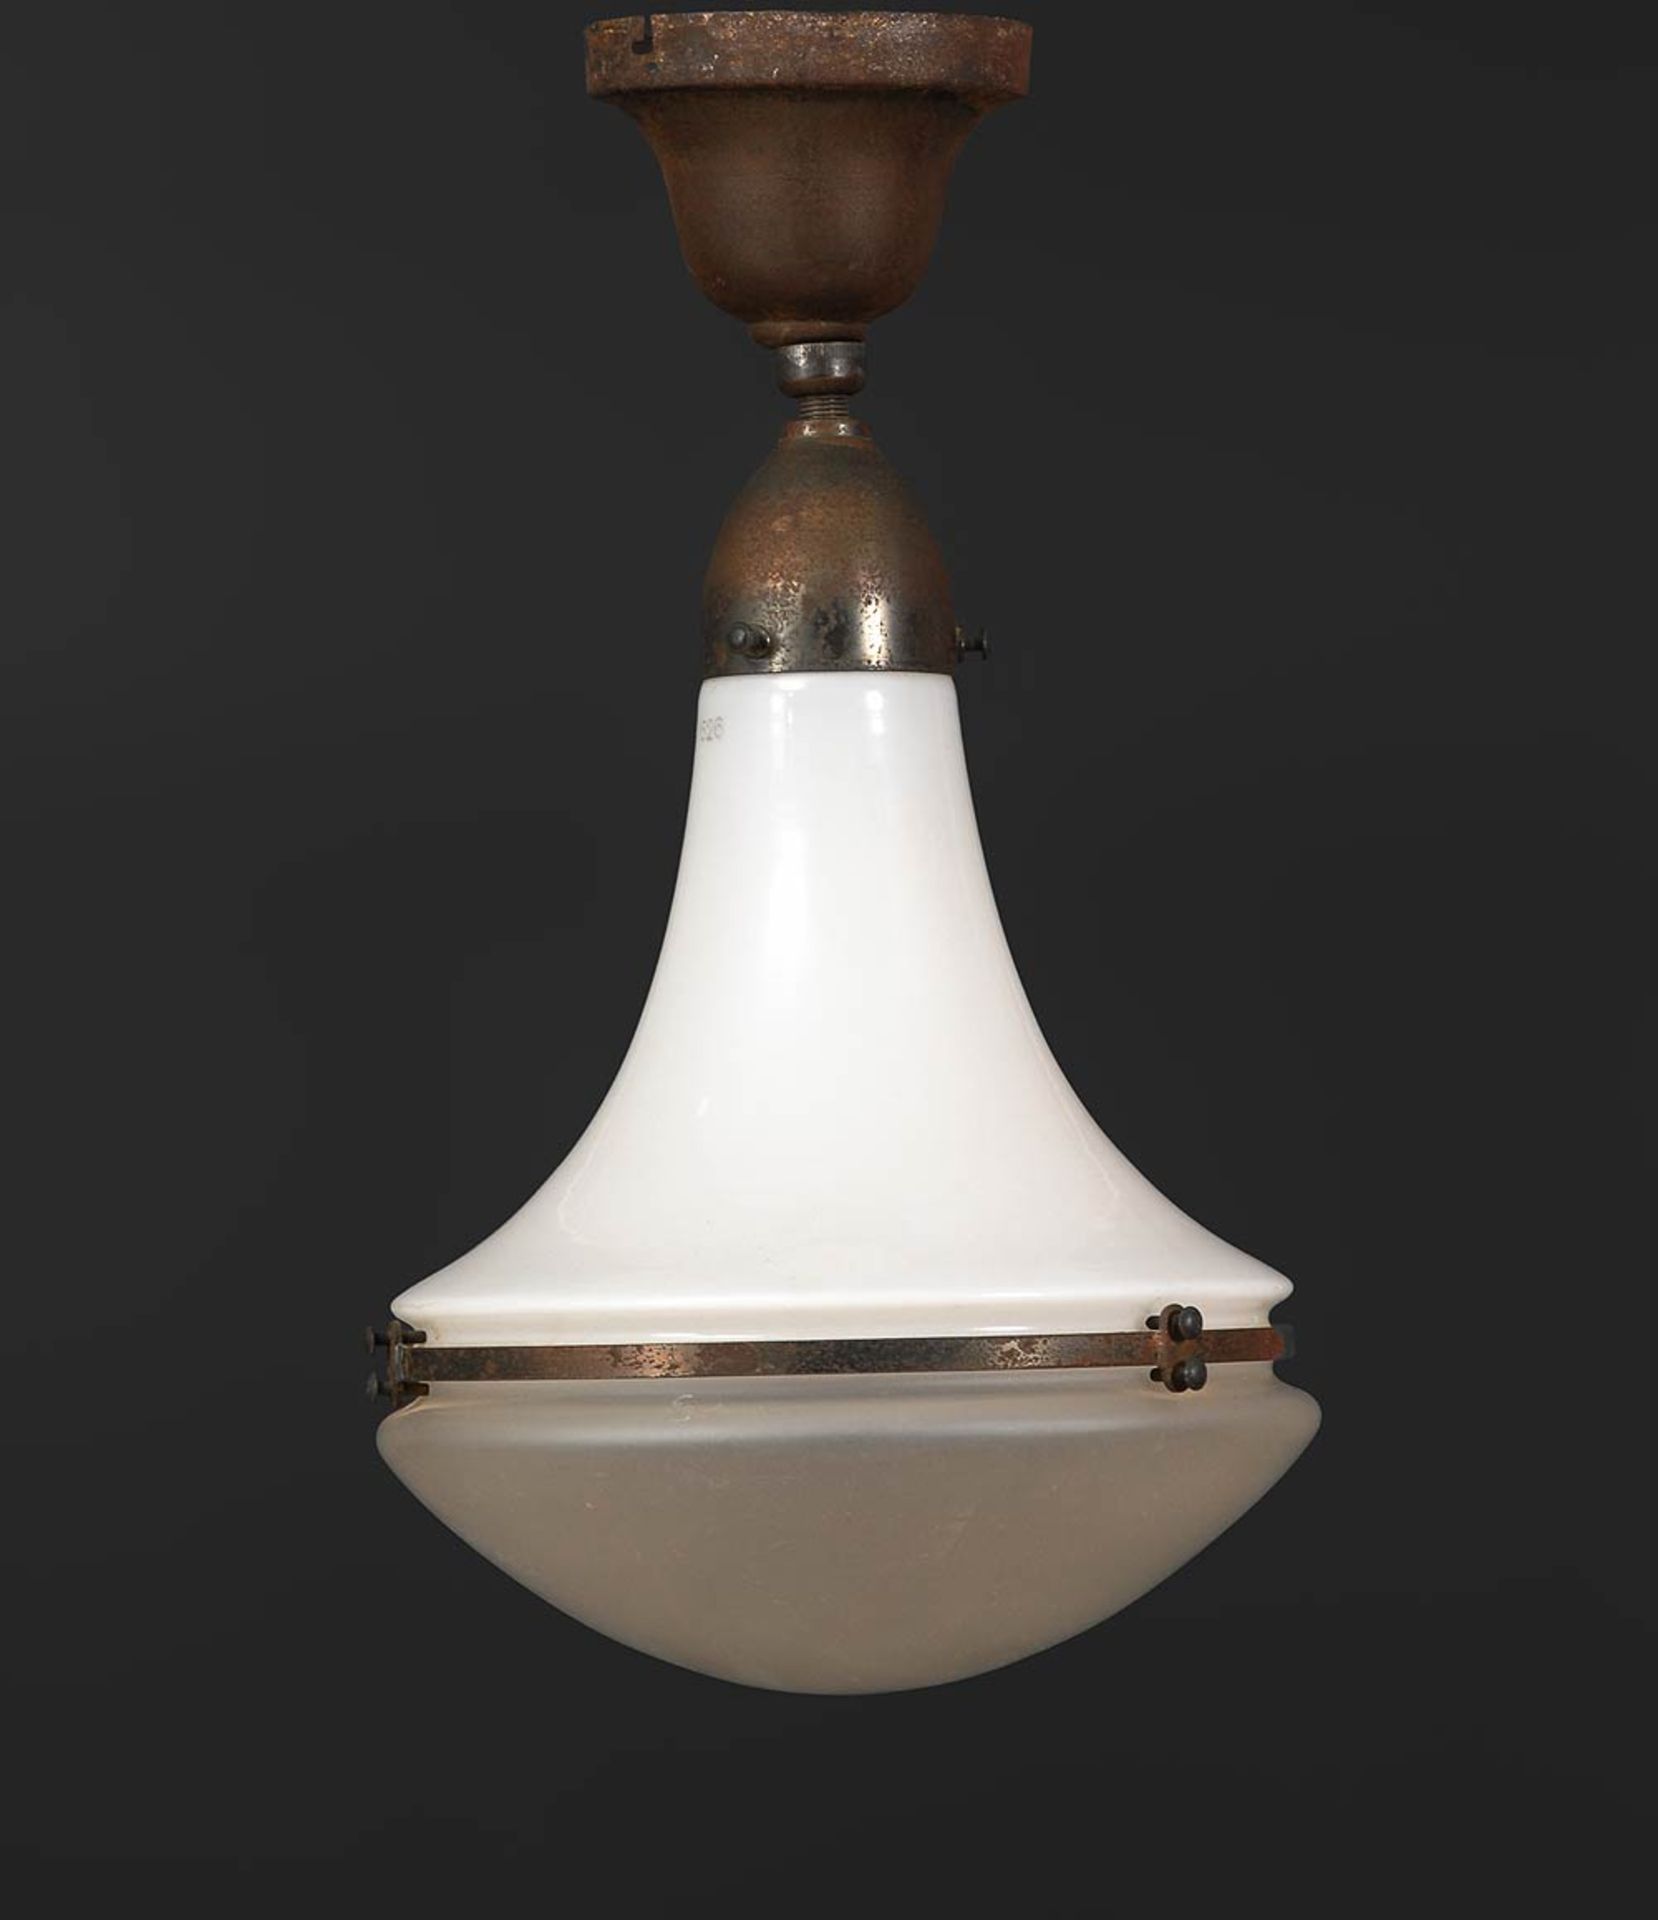 Deckenlampe "Luzette", Entwurf Peter Behrens. Milchglas mit Stempel "L 1526" und undeutlichem